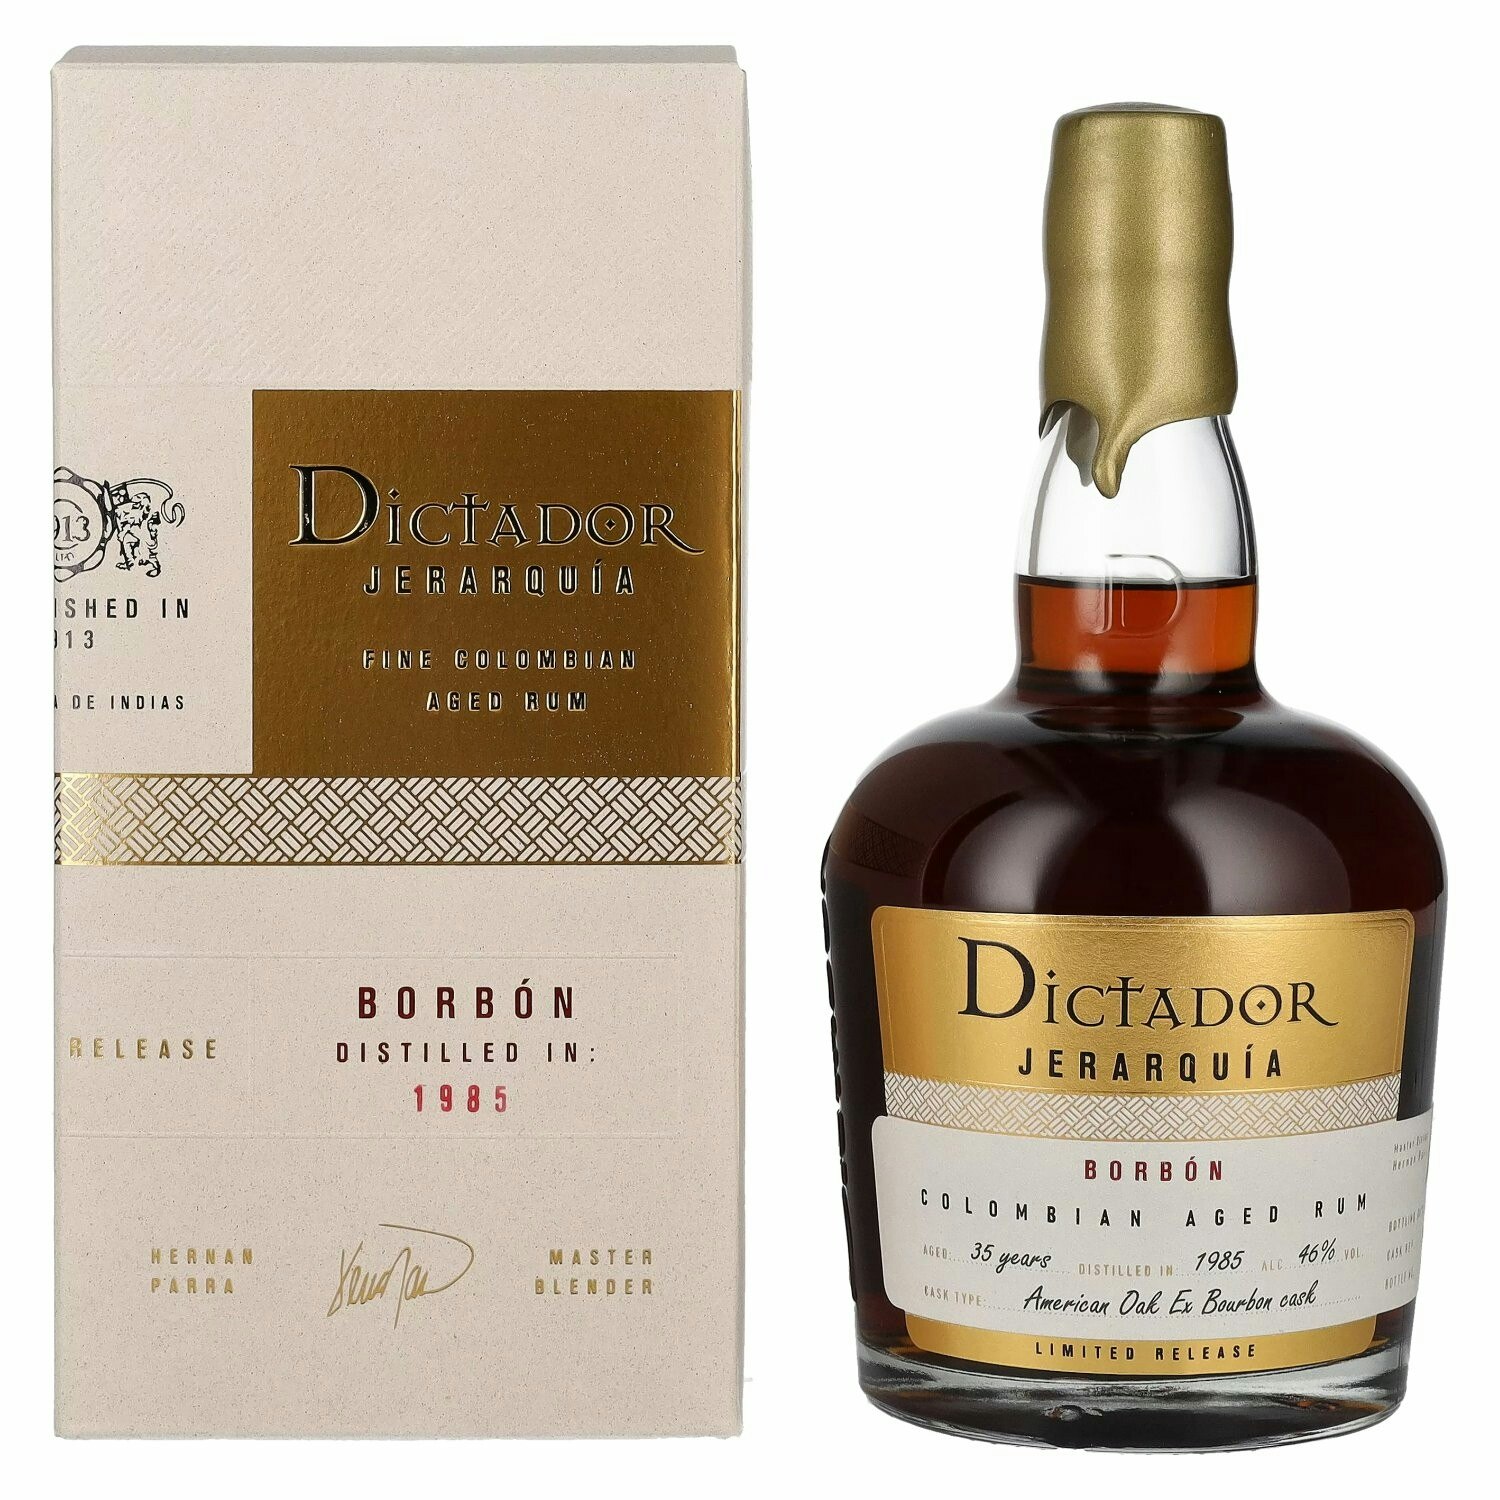 Dictador JERARQUÍA 35 Years Old BORBÓN Rum 1985 46% Vol. 0,7l in Giftbox